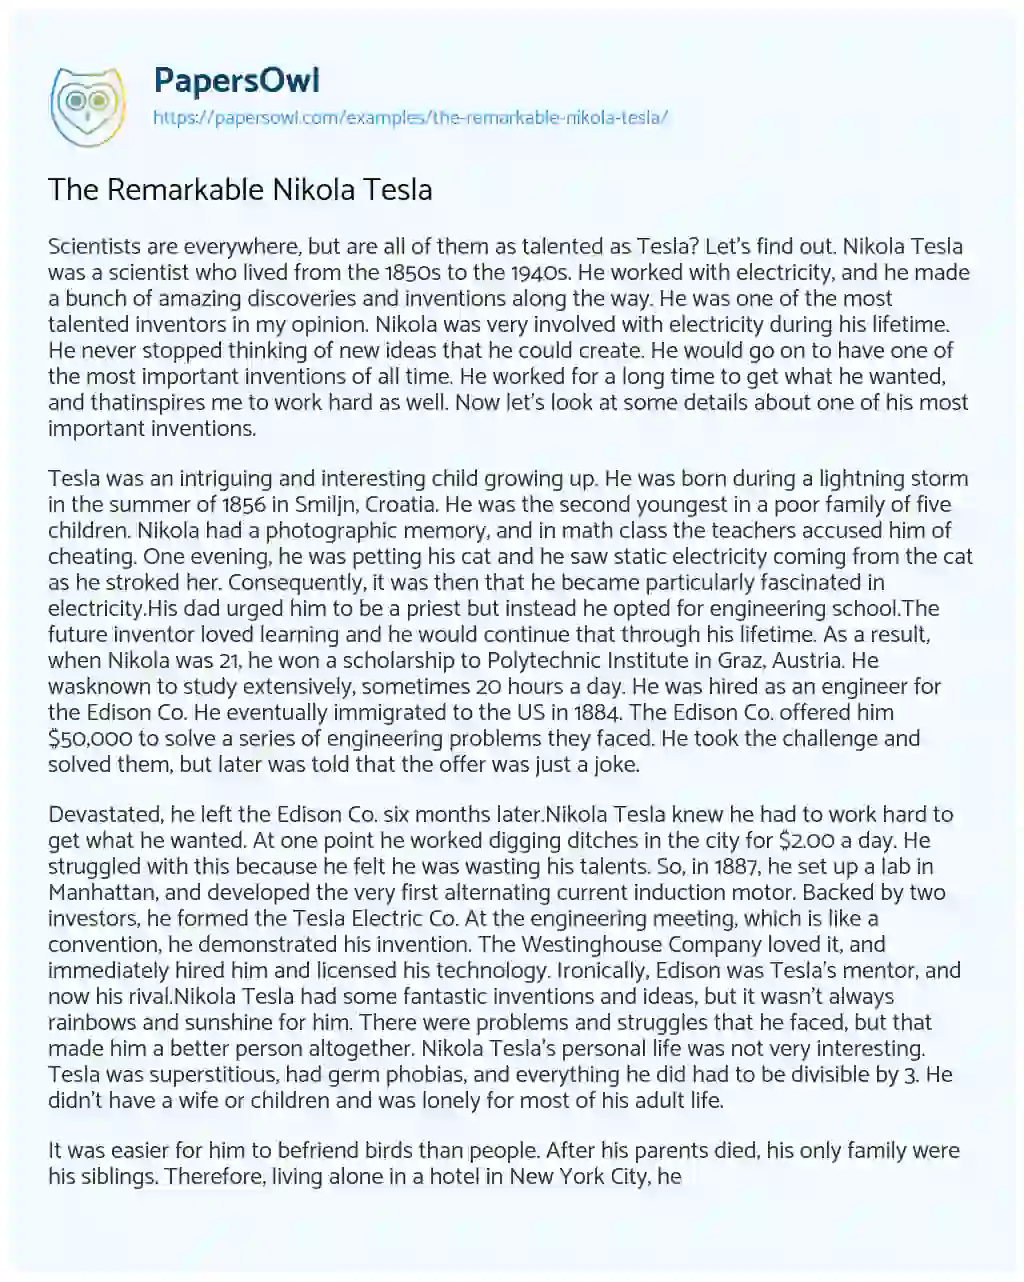 The Remarkable Nikola Tesla essay